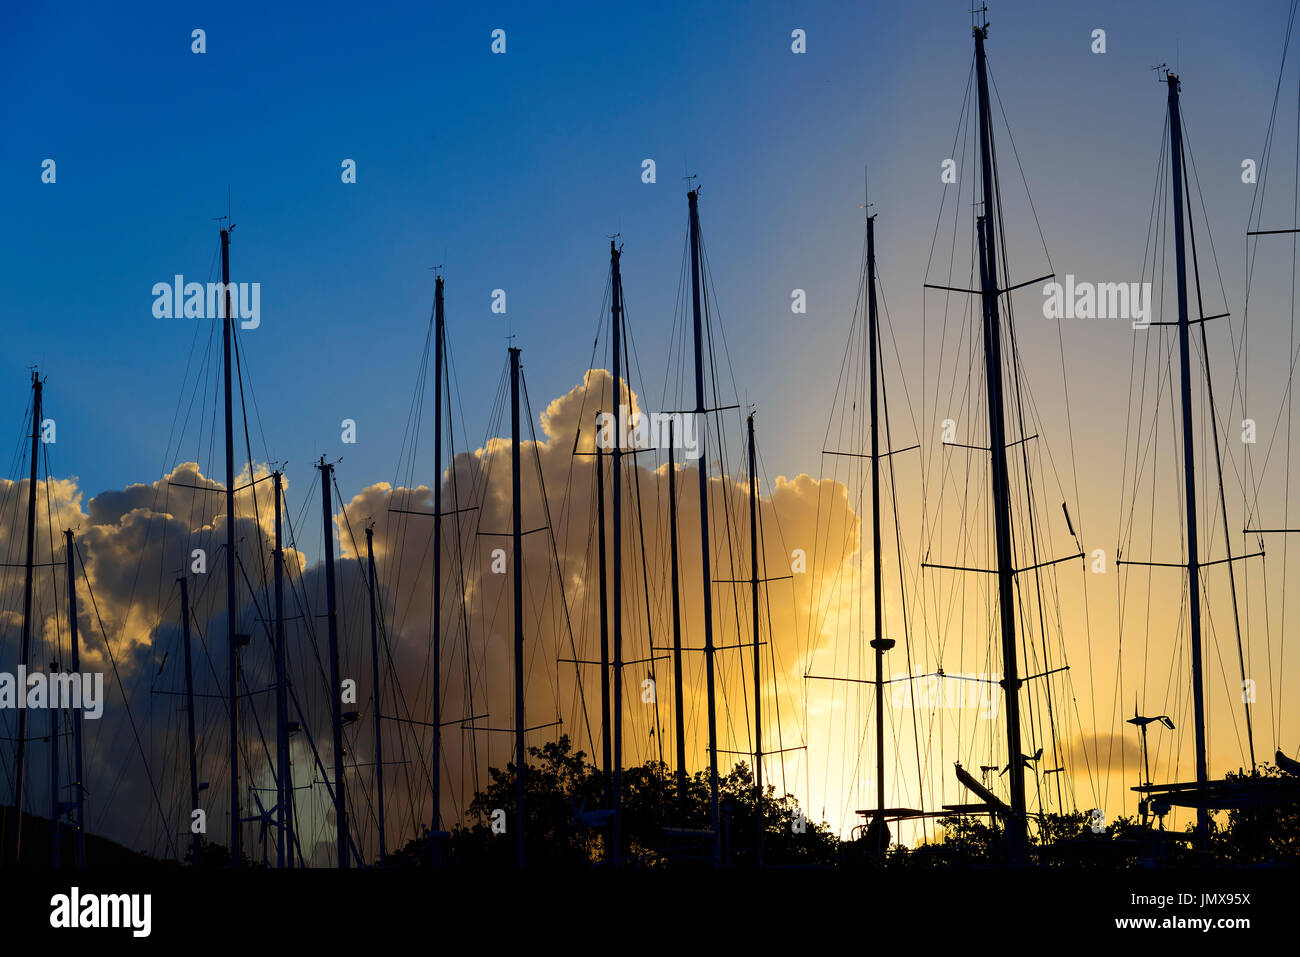 Tramonto con montante di navi a vela, isola di Tortola, Isole Vergini Britanniche, Mar dei Caraibi Foto Stock